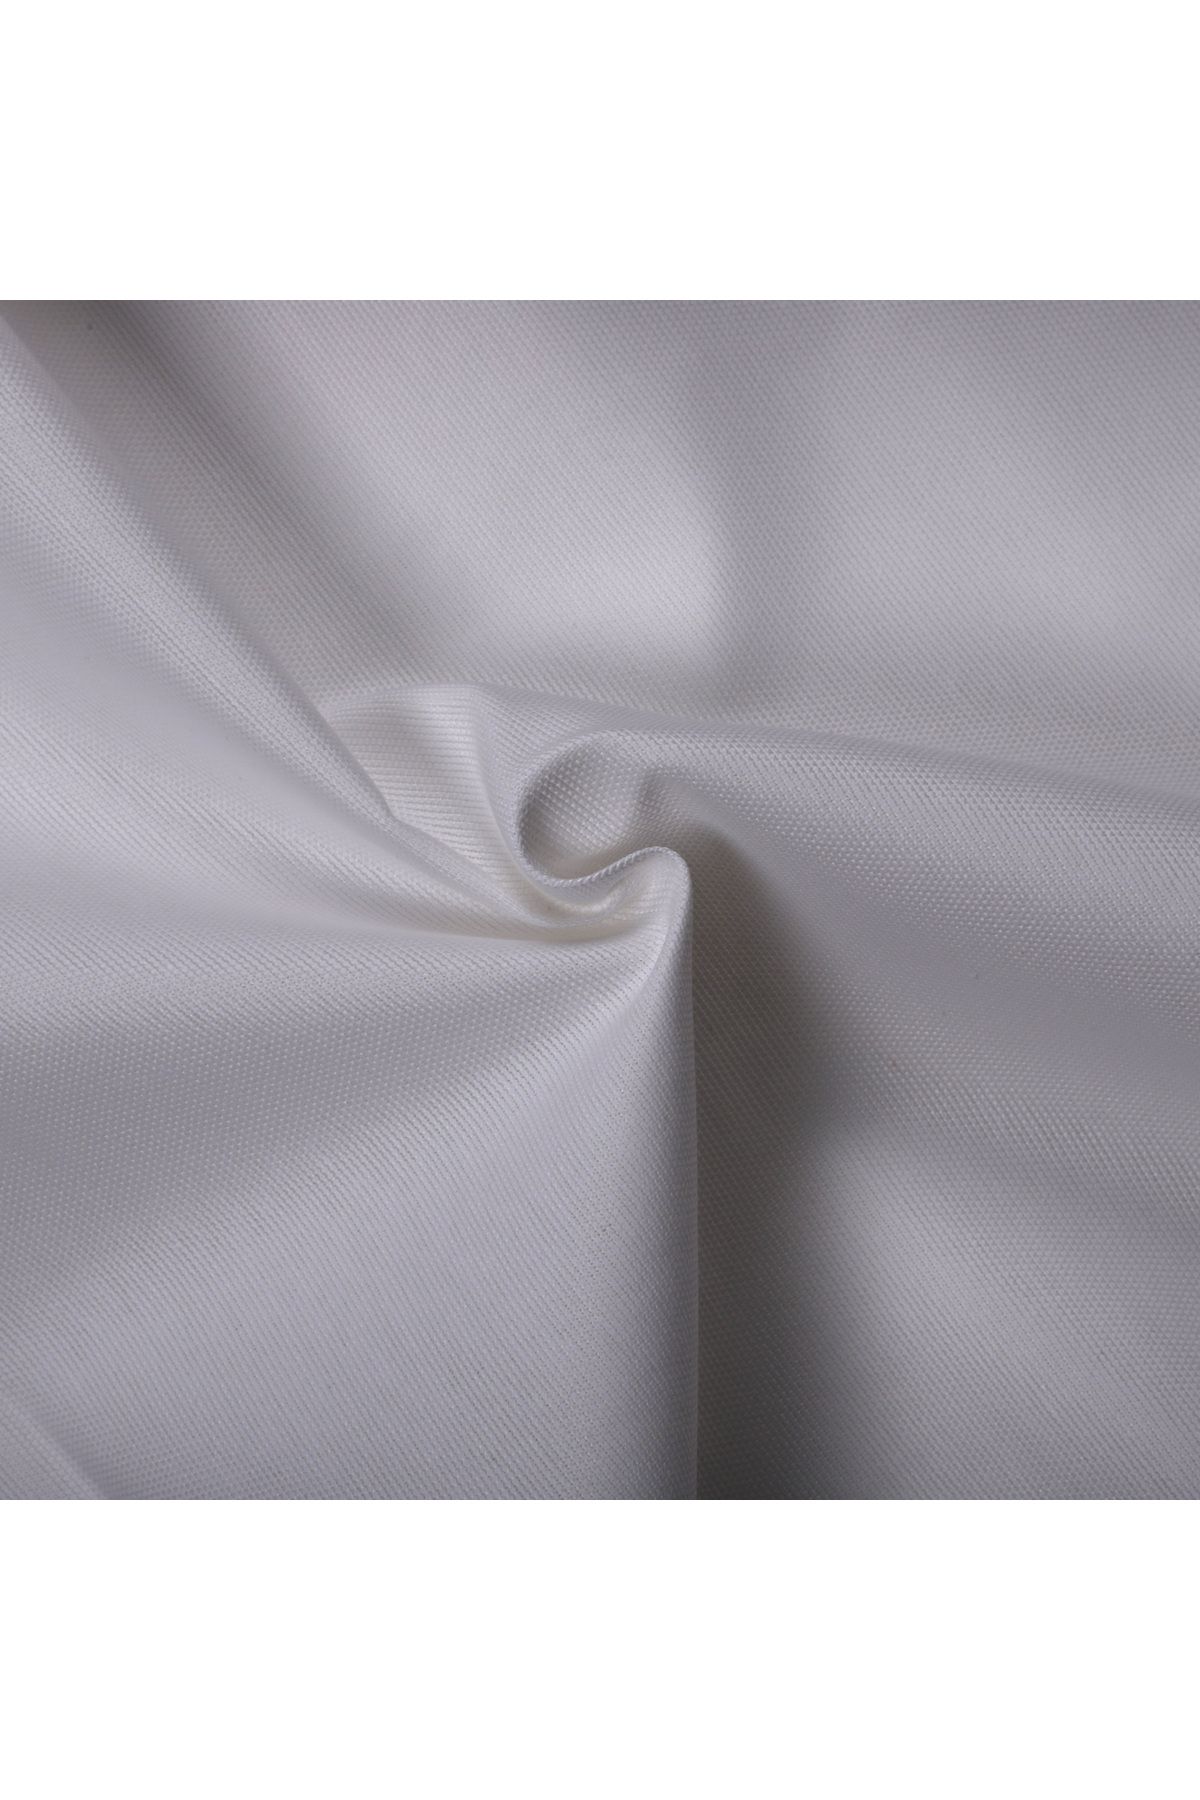 KAMİZ Duck Bezi Punch Keten Kumaşı Beyaz 50x180 Cm